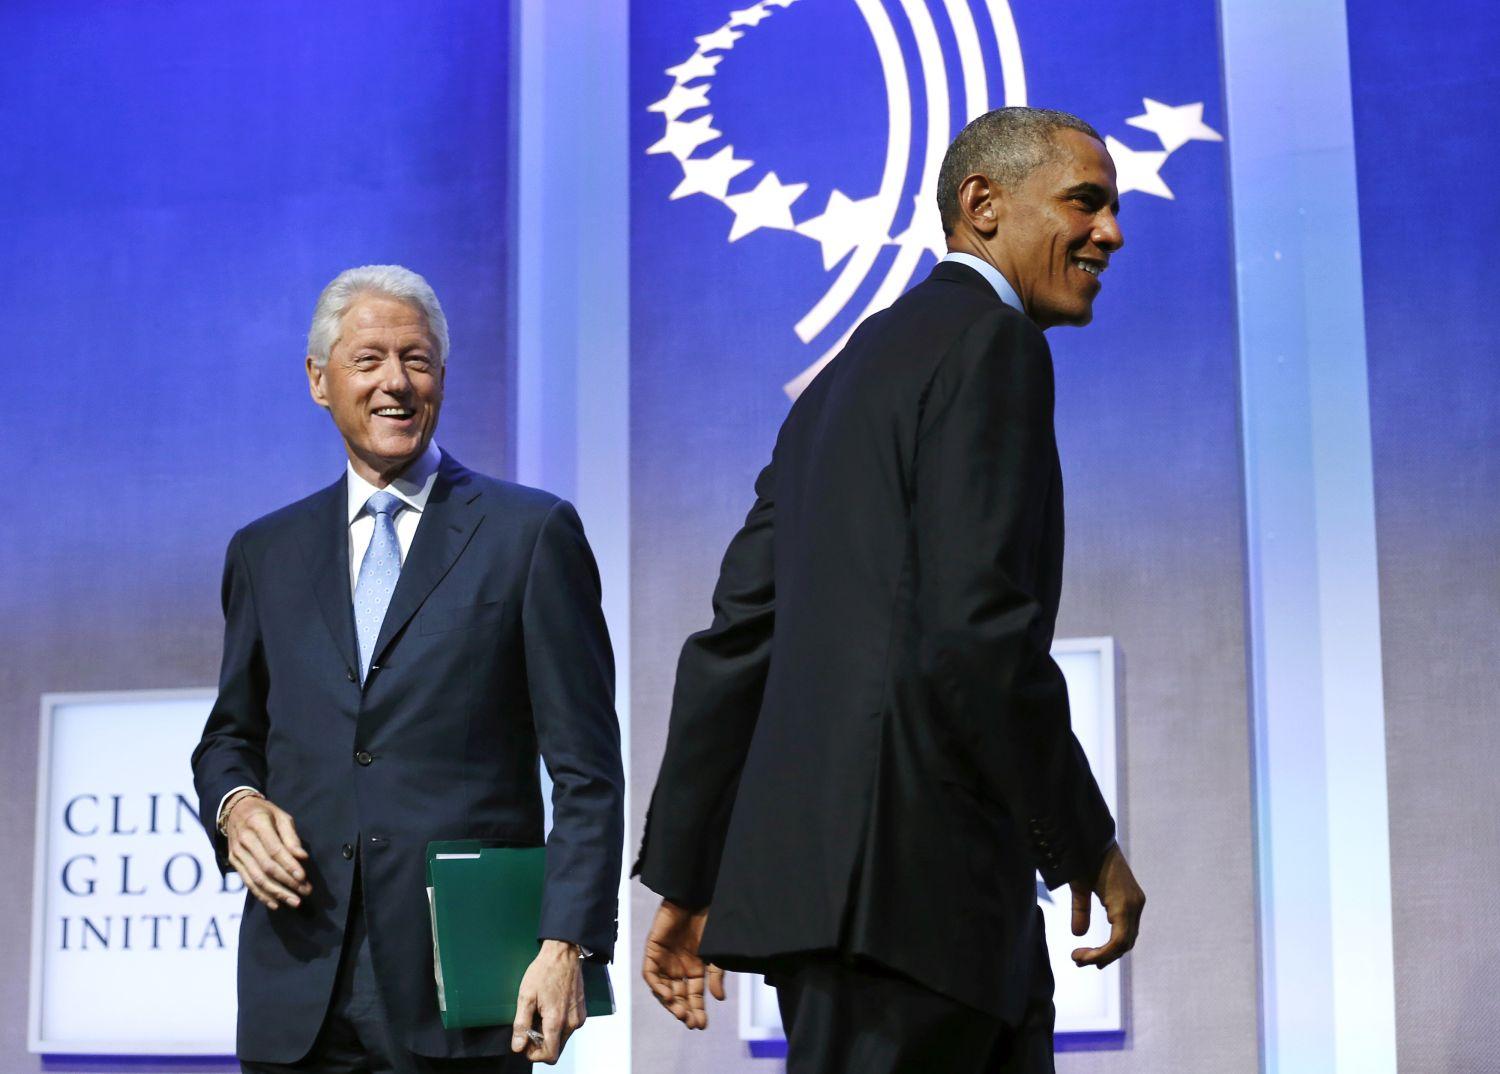 Clinton és Obama a beszéd előtt. Az exelnök pár napja pénzéhesnek és hatalommániásnak nevezte Orbánt